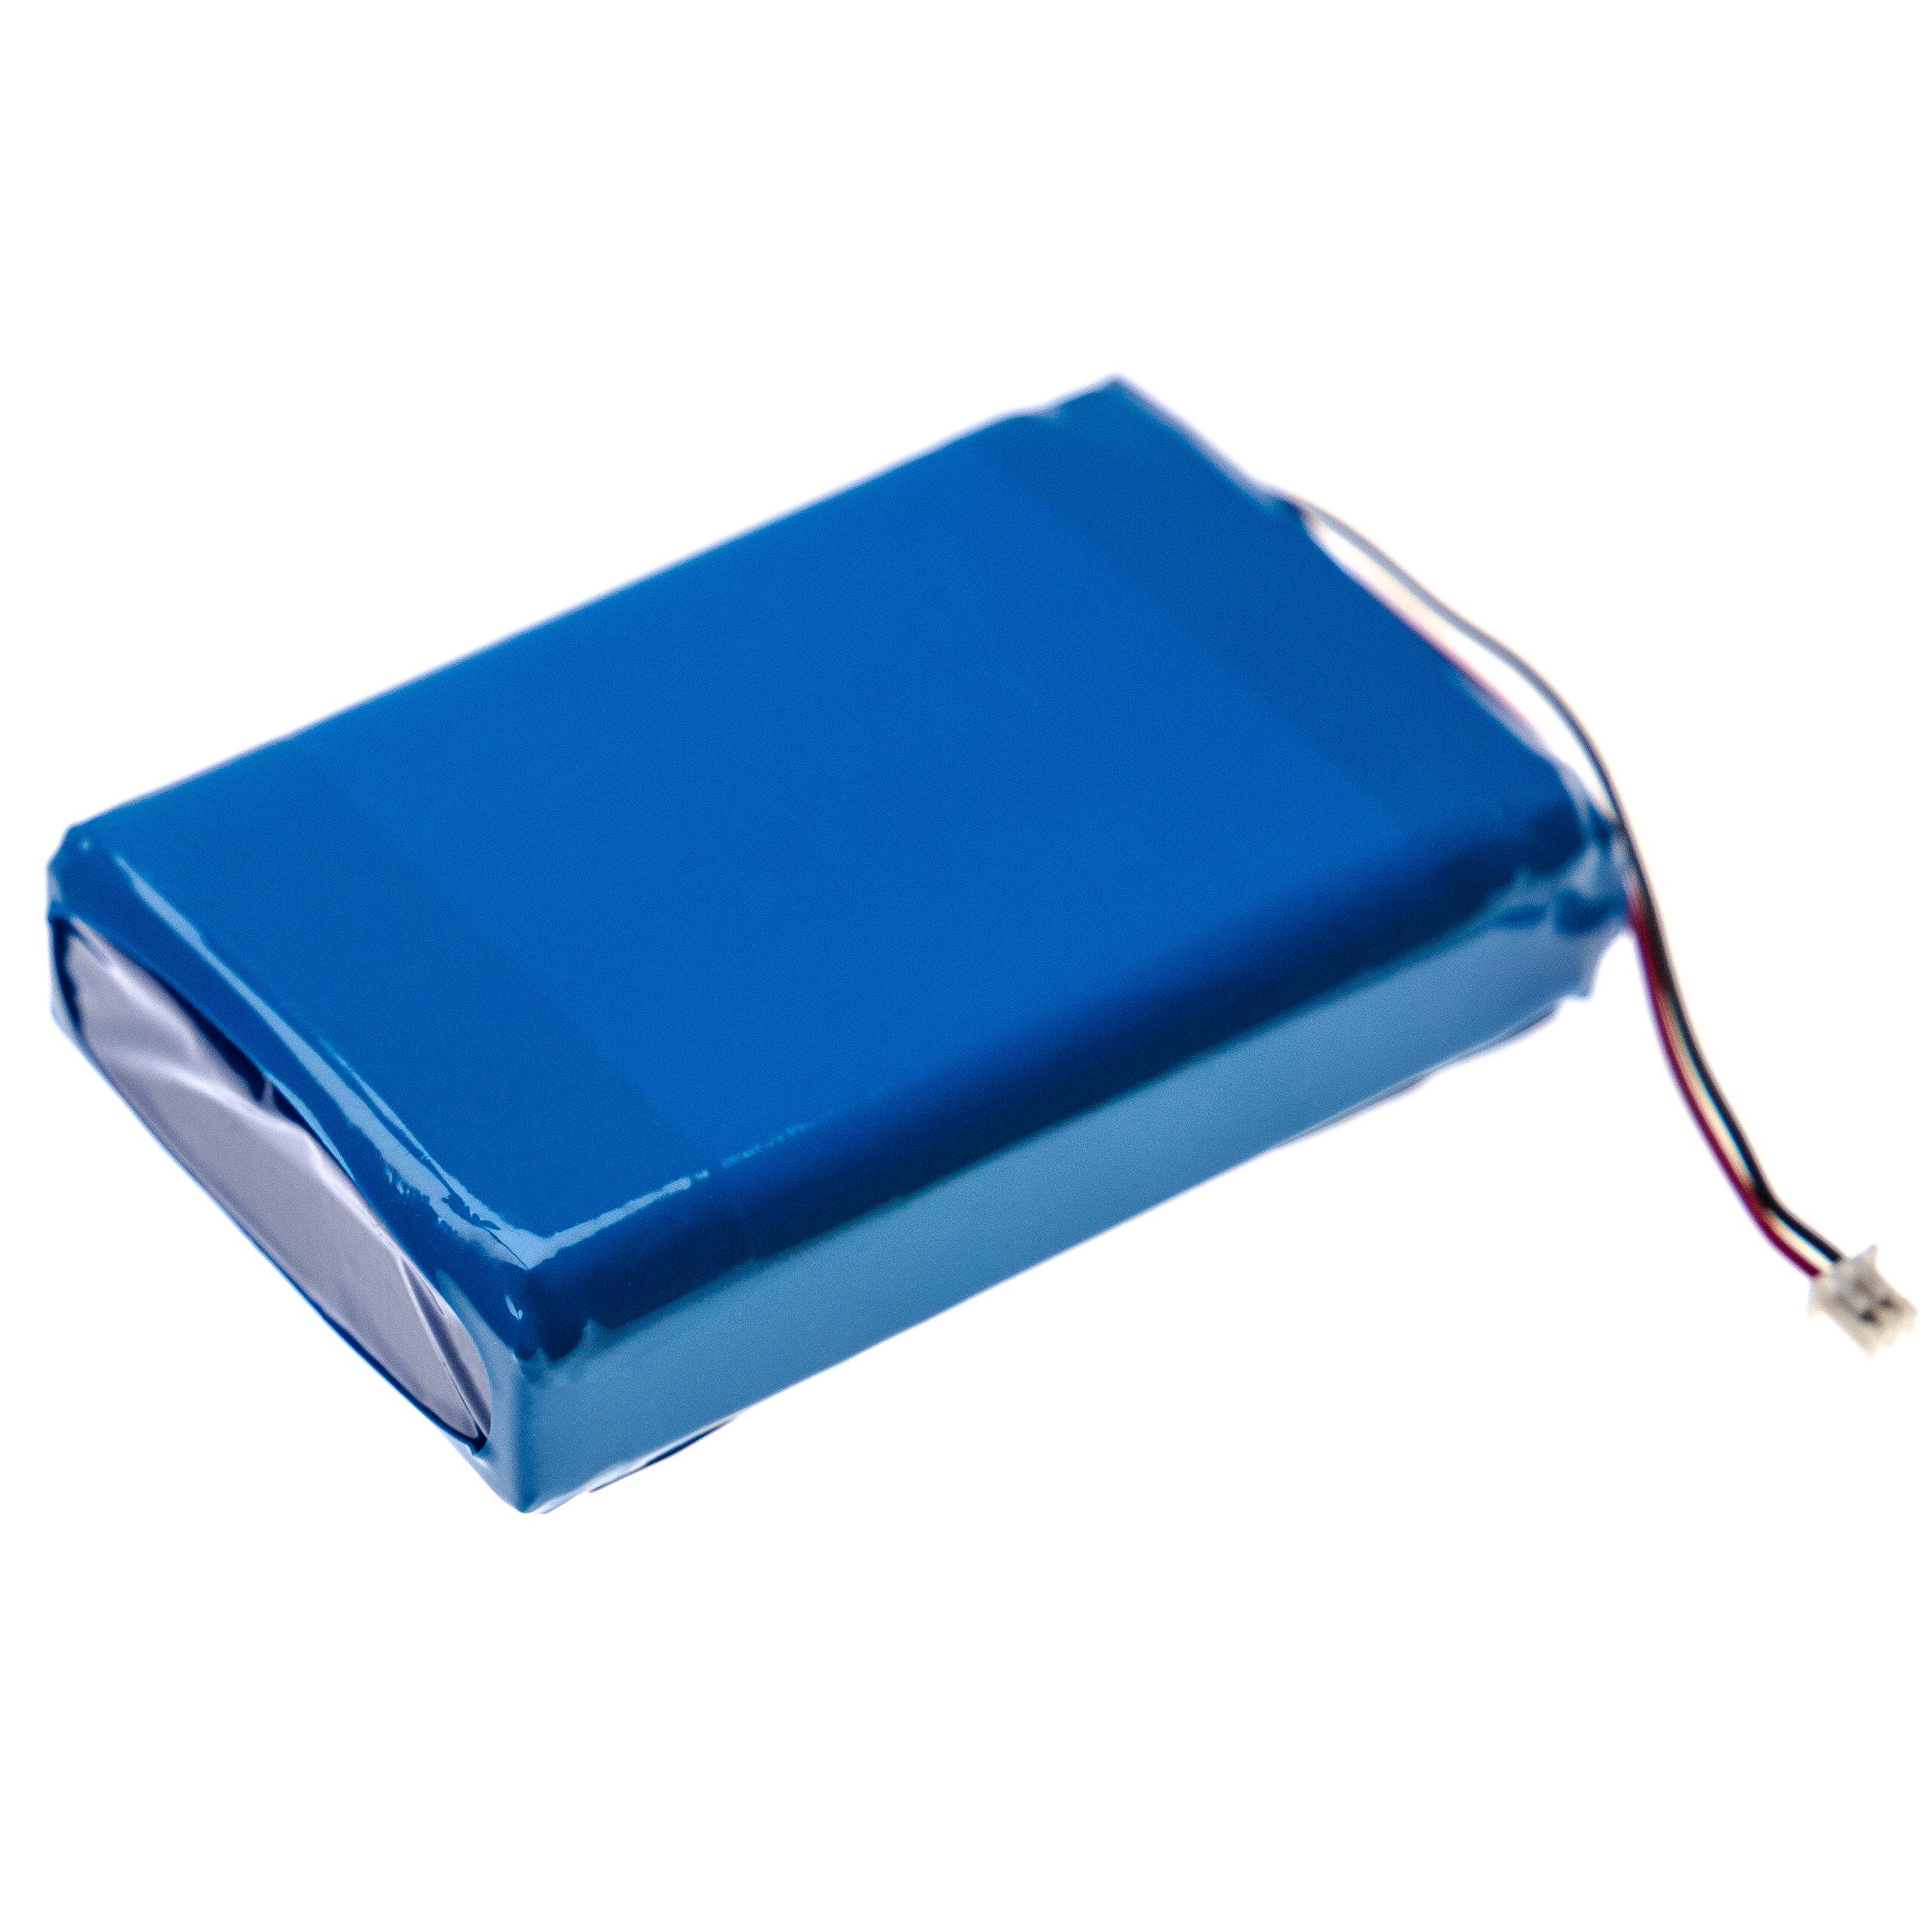 Akumulator do kasy fiskalnej zamiennik Uniwell YT784262-2S - 2600 mAh 7,4 V LiPo